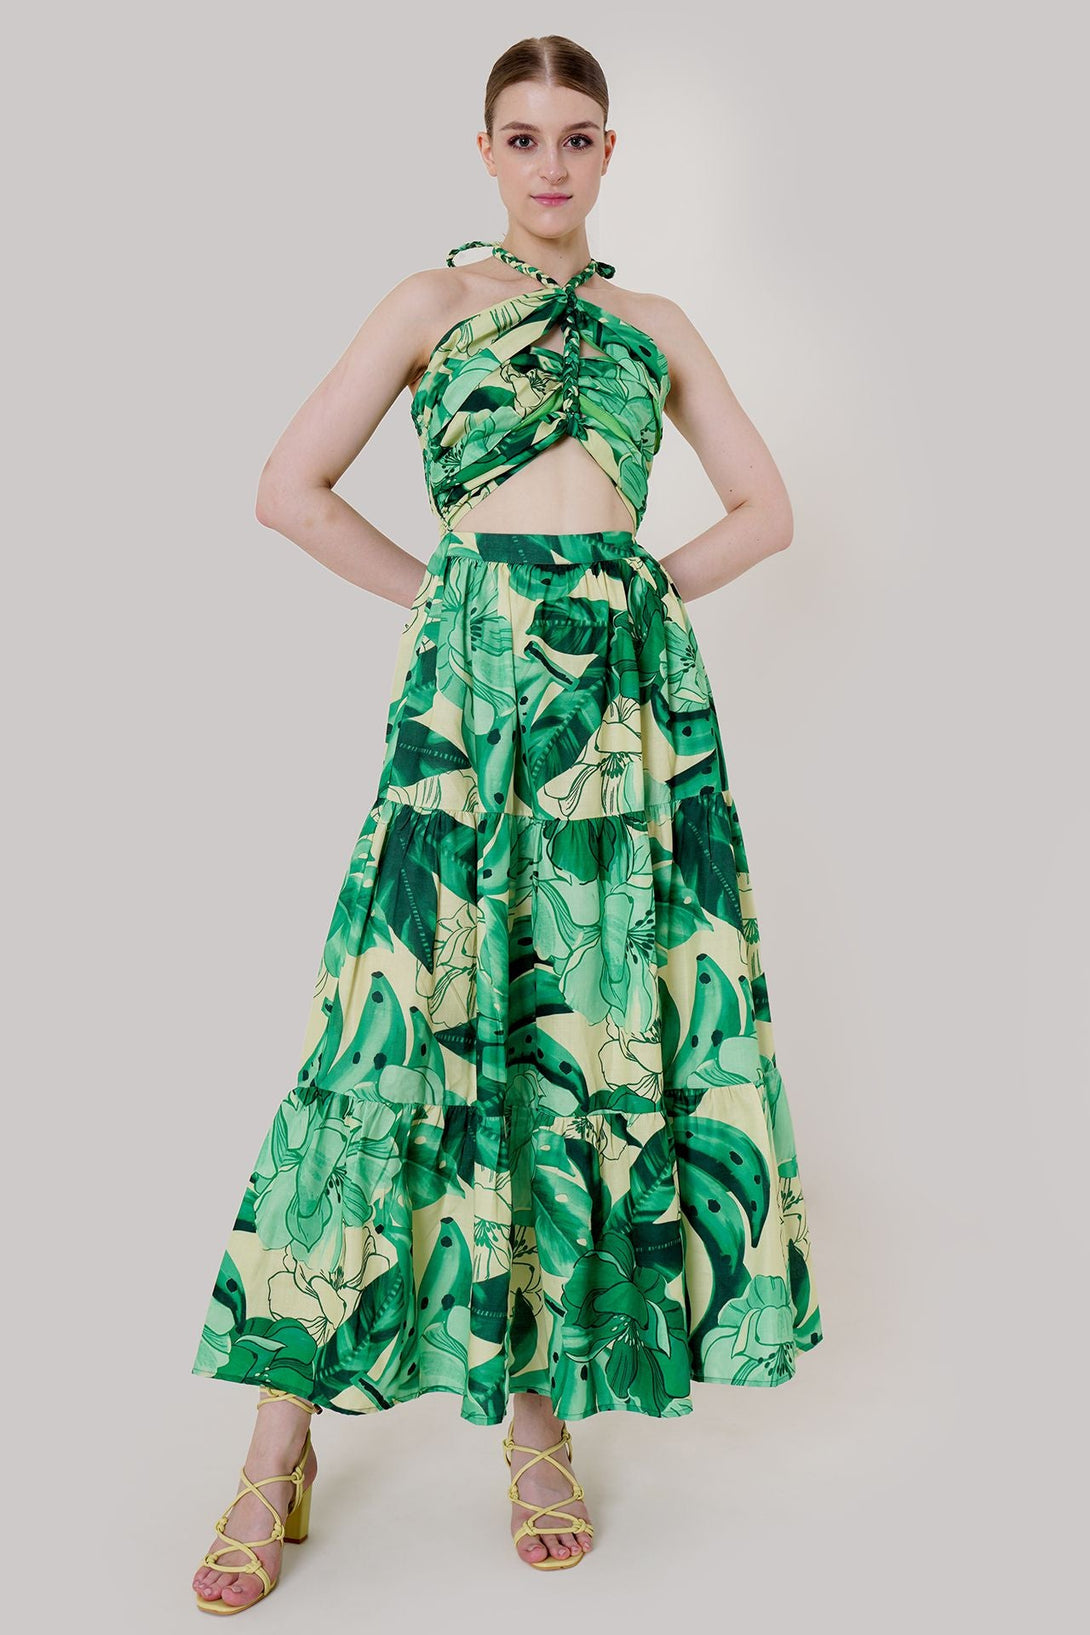 "plus size maxi dresses" "mint green summer dress" "floor length dress" "long side cut out dress"